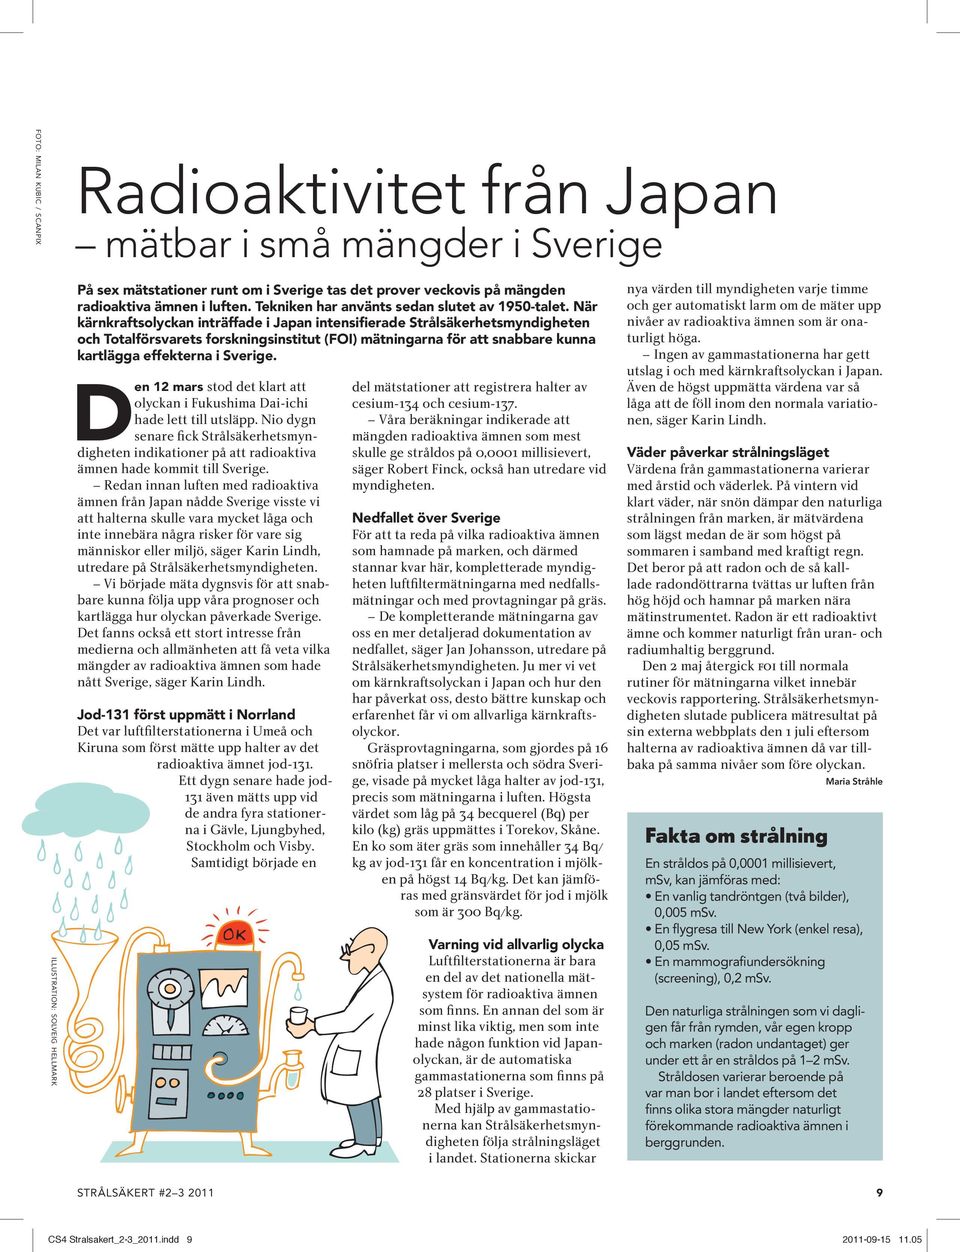 När kärnkraftsolyckan inträffade i Japan intensifierade Strålsäkerhetsmyndigheten och Totalförsvarets forskningsinstitut (FOI) mätningarna för att snabbare kunna kartlägga effekterna i Sverige.